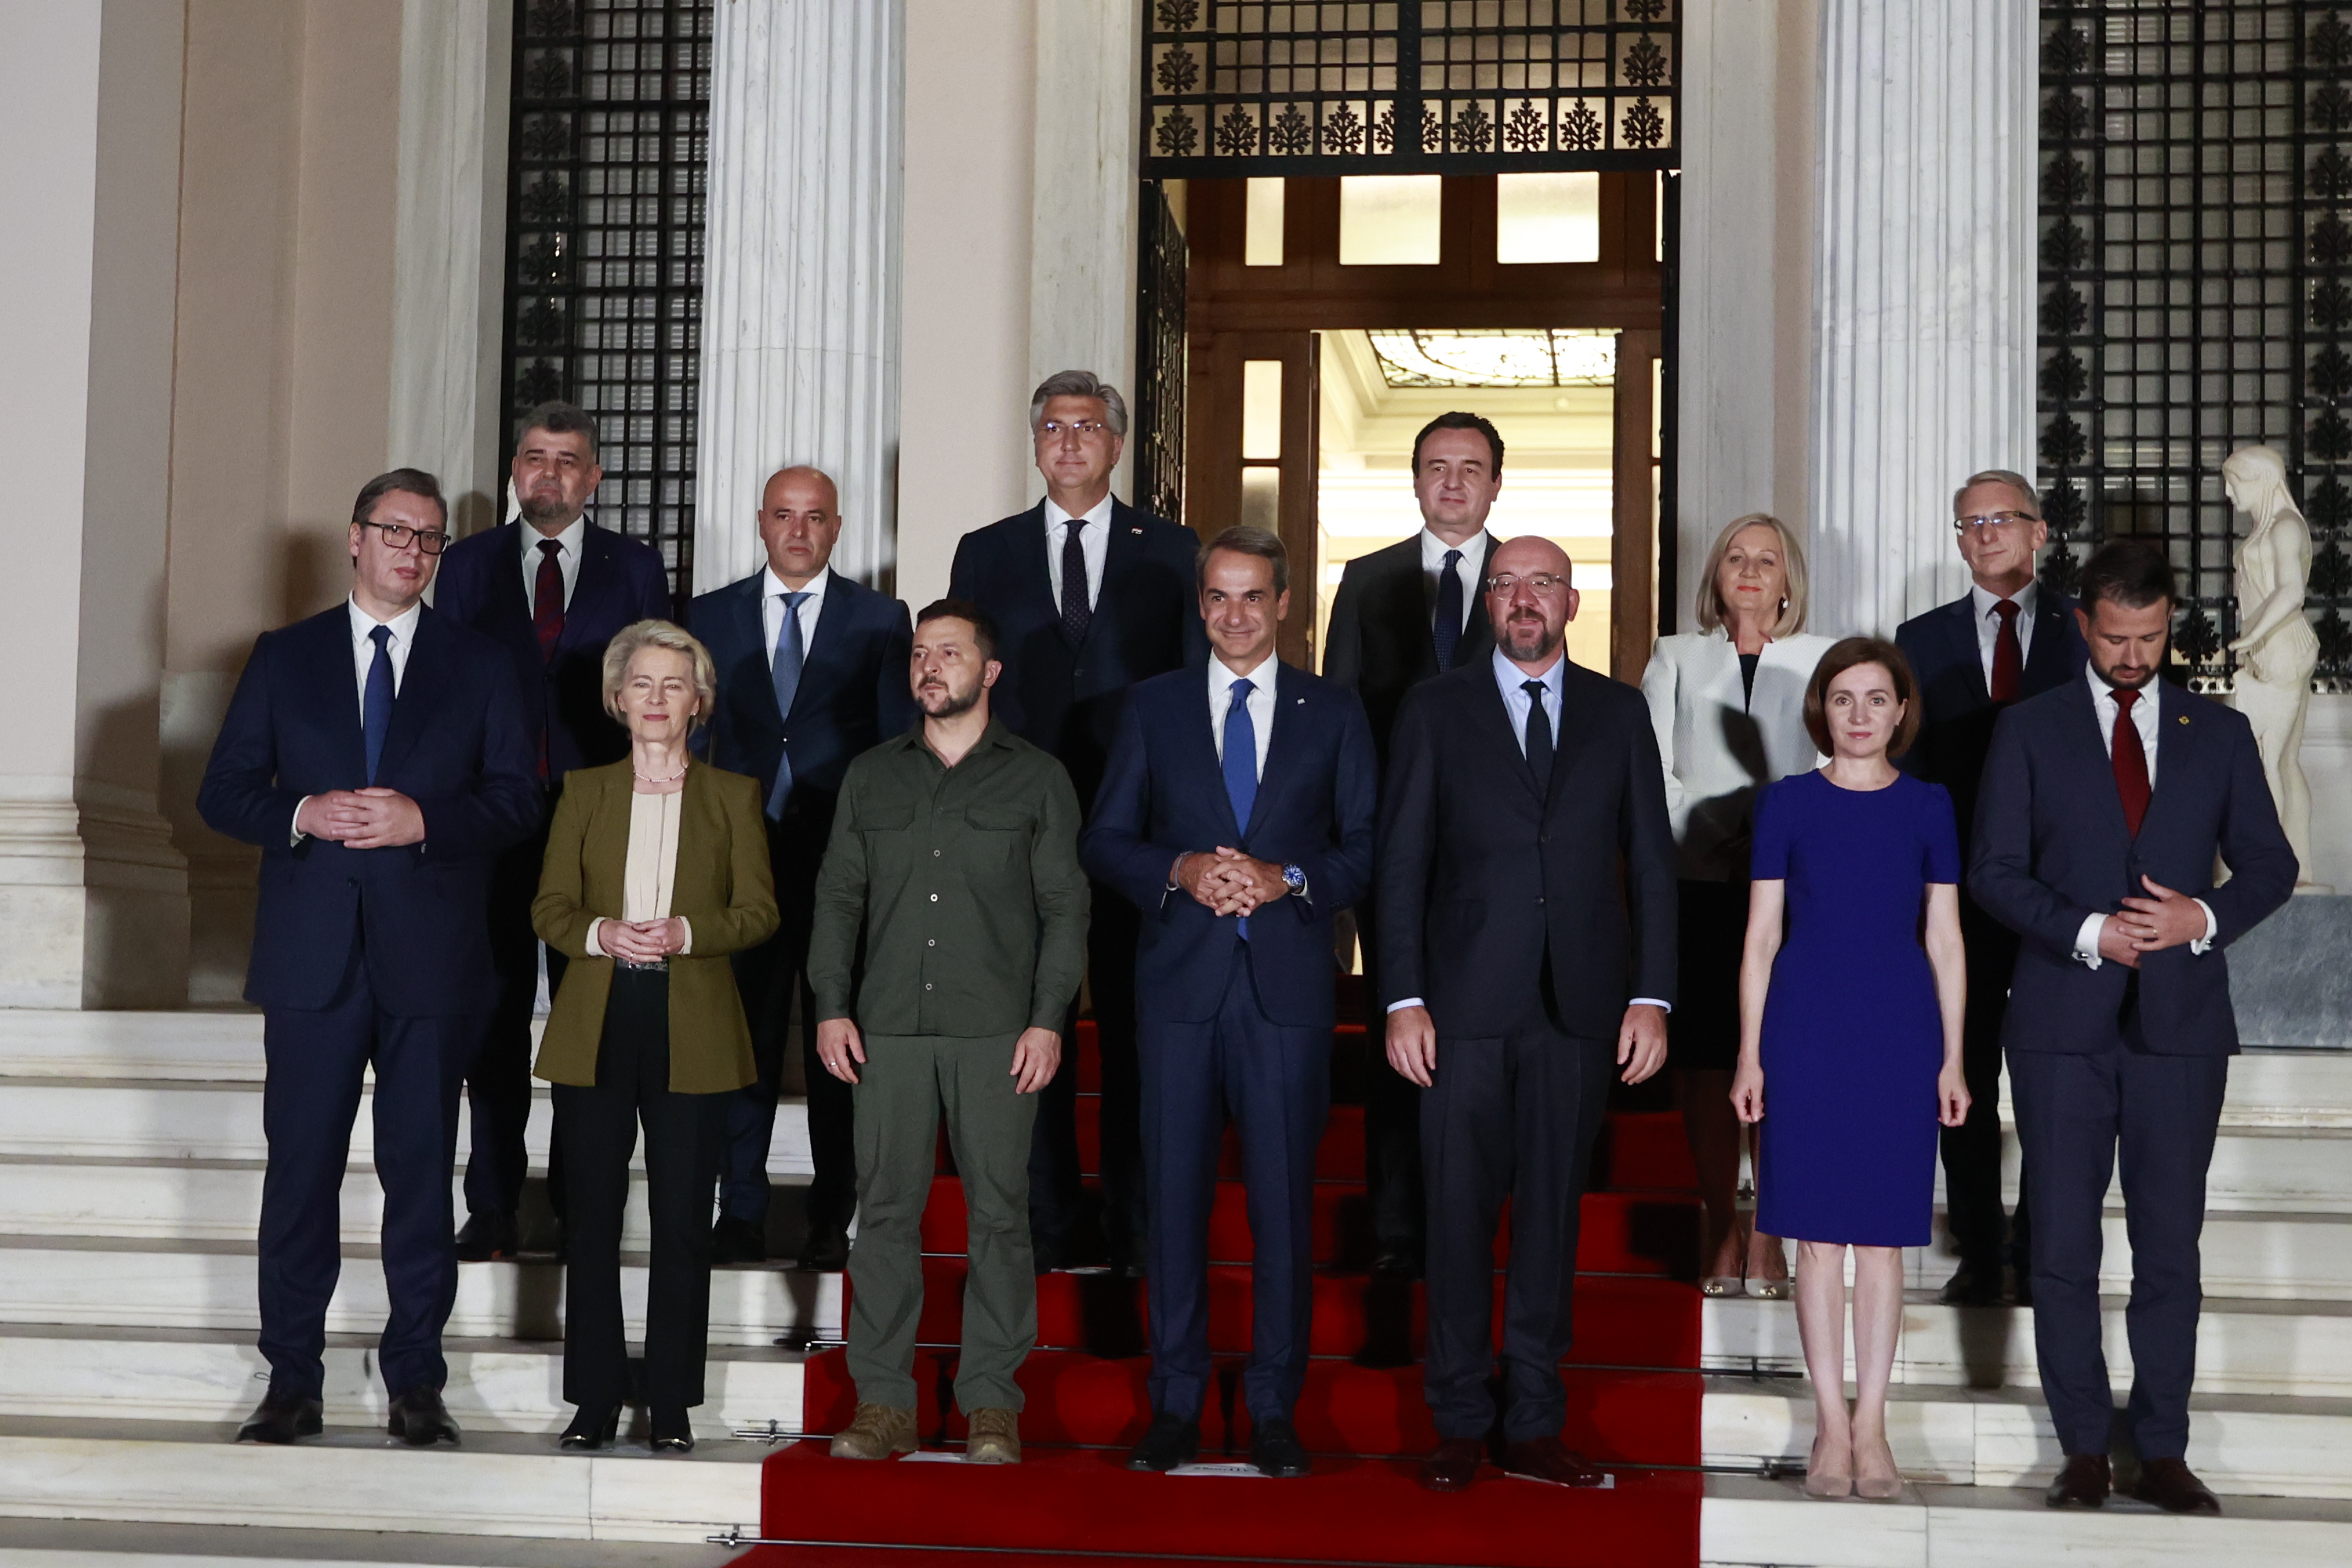 Διακήρυξη των Αθηνών: Όλα όσα αναφέρει το κείμενο για την Ουκρανία που υπέγραψαν οι 11 ηγέτες στο Μαξίμου